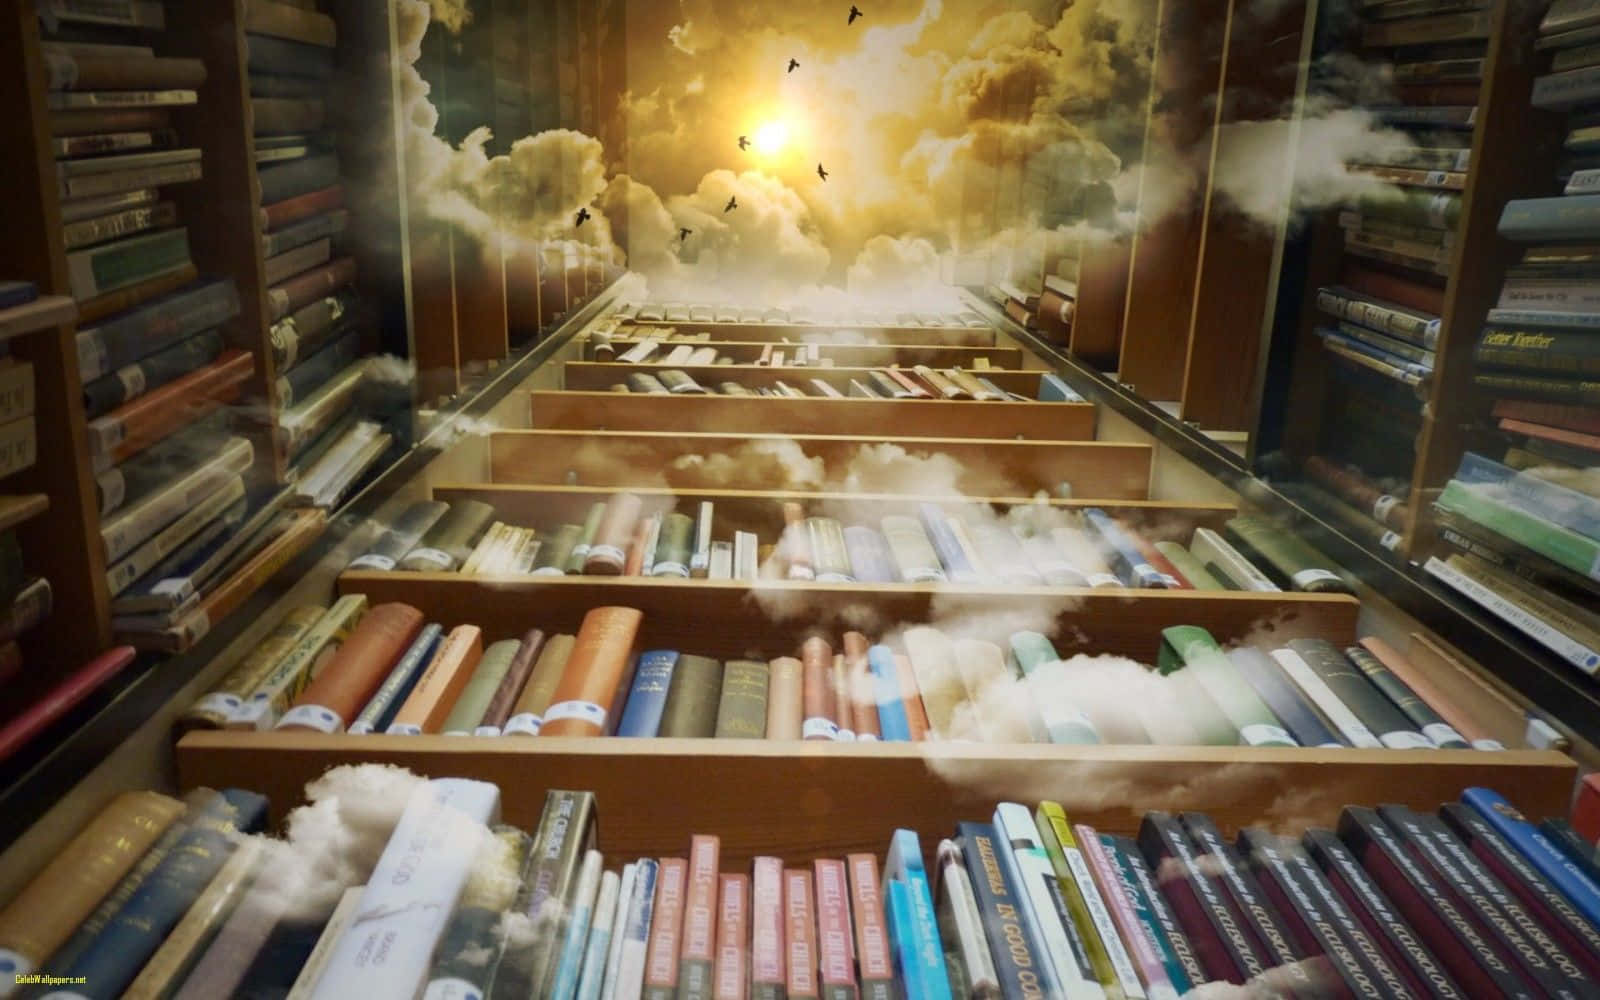 Unabiblioteca Con Libros Y Nubes En El Cielo